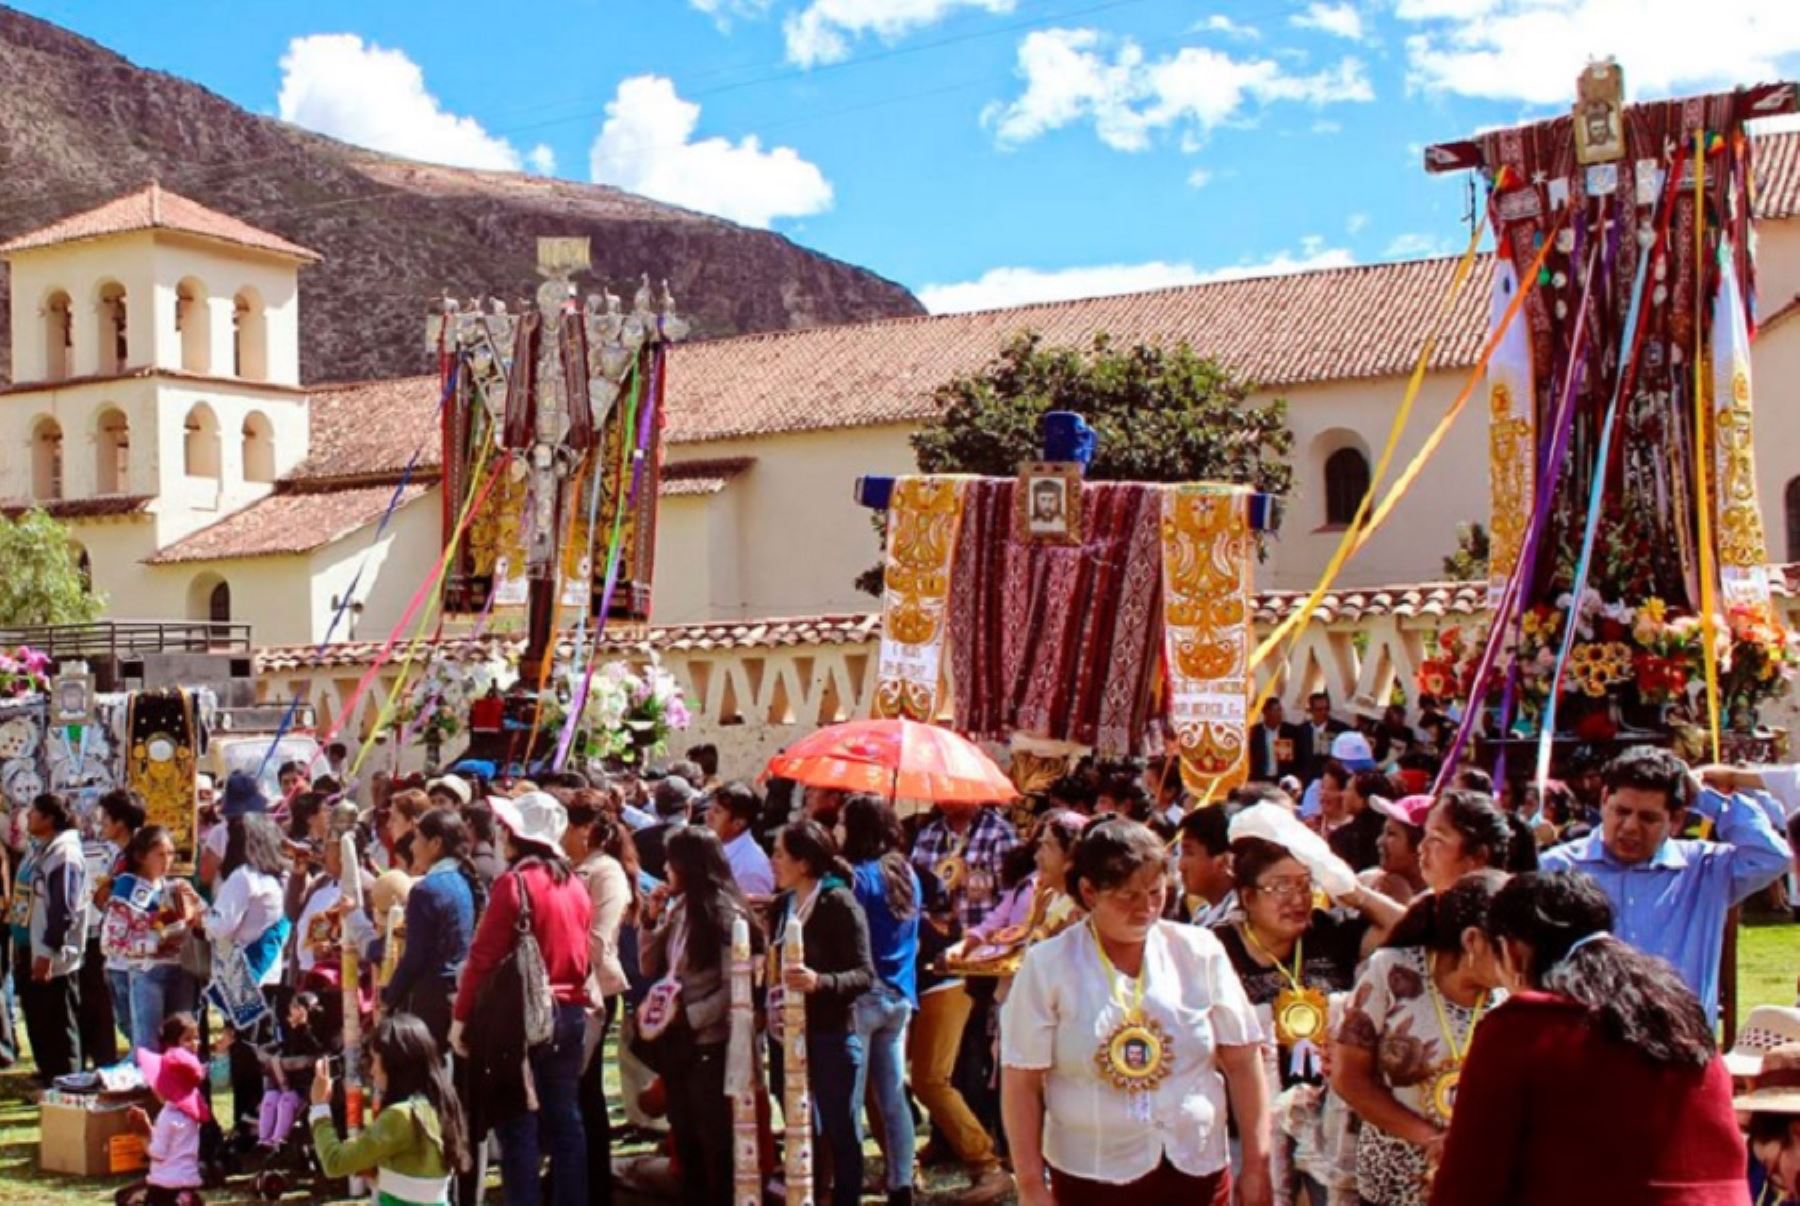 Celebrada con tradiciones y costumbres rebosantes de fervor cristiano y sincretismo cultural andino-católico, la Fiesta de las Cruces o Cruz de Mayo se manifiesta cada 3 de mayo en varias provincias y regiones, siendo una de las más importantes celebraciones del calendario festivo regional peruano.